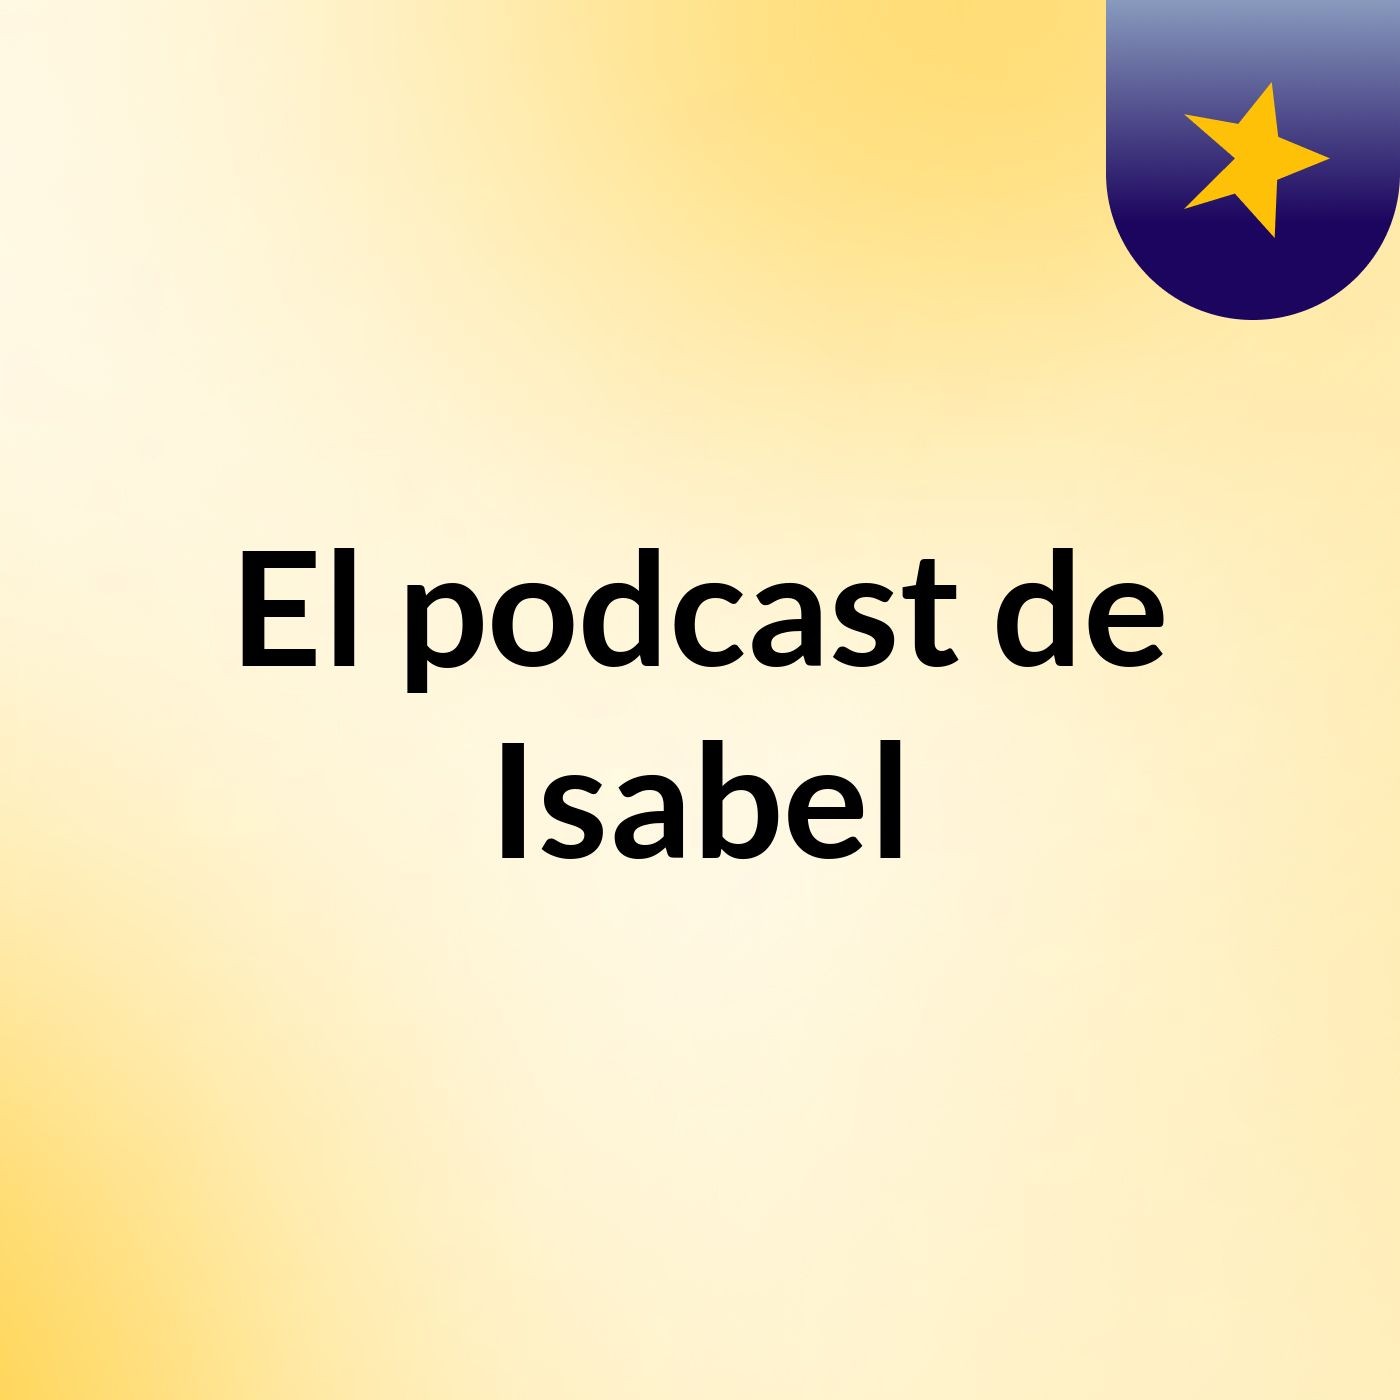 El podcast de Isabel